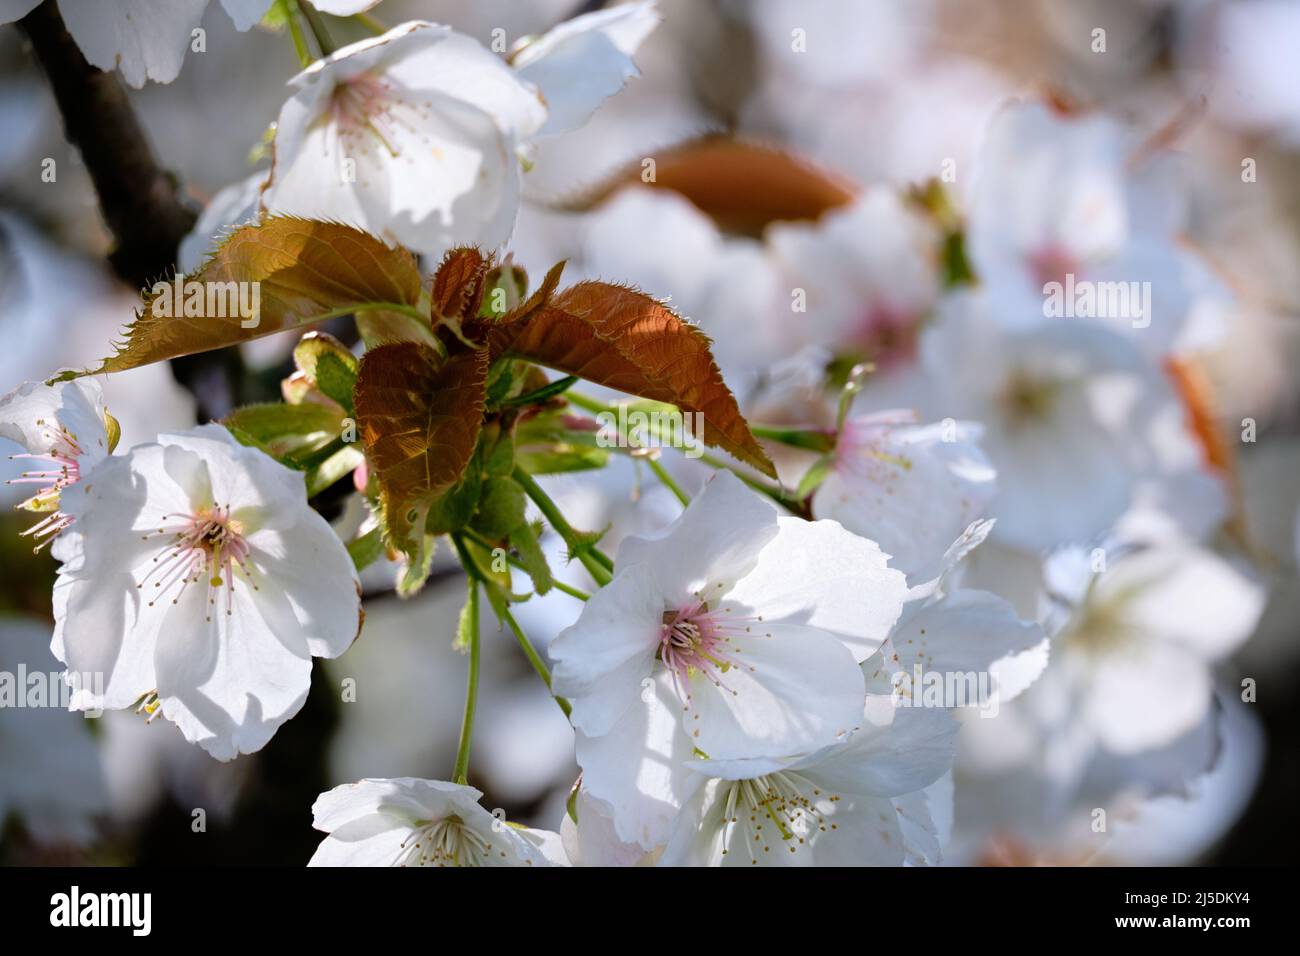 Gros plan de nouvelles feuilles rouges et vertes entourées de délicates fleurs de cerisier blanc et rose Banque D'Images